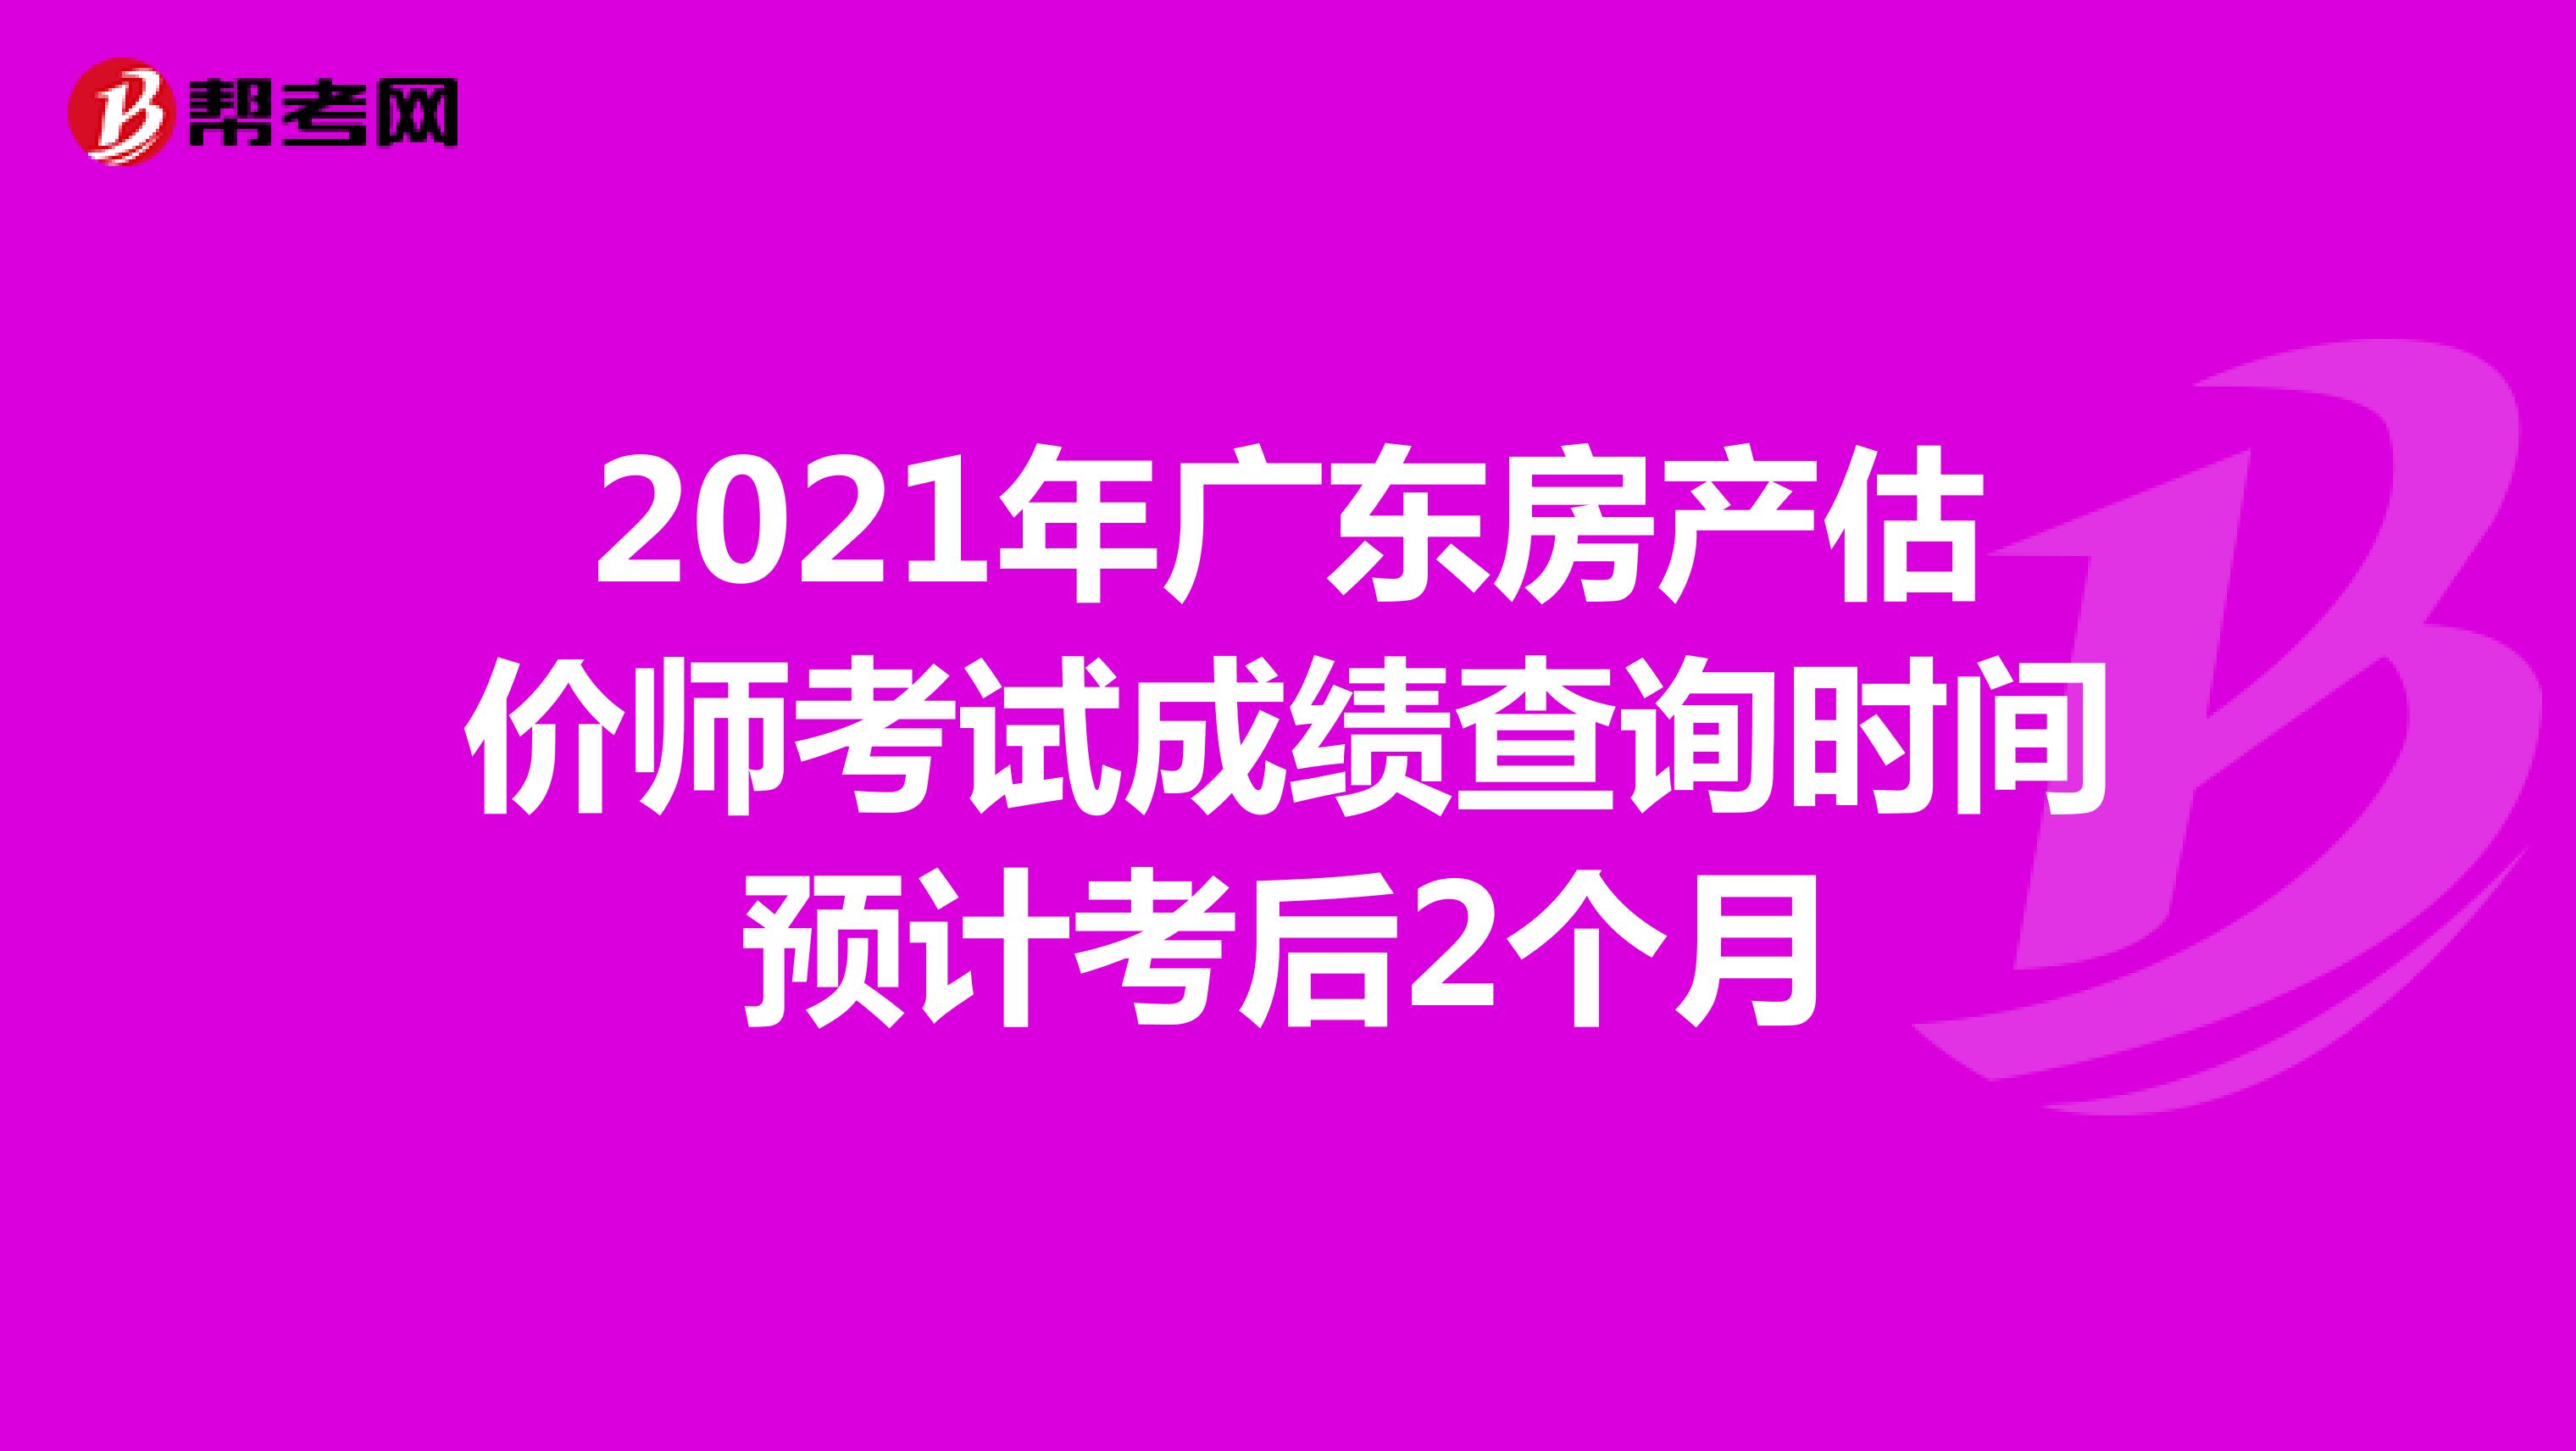 2021年广东房产估价师考试成绩查询时间预计考后2个月